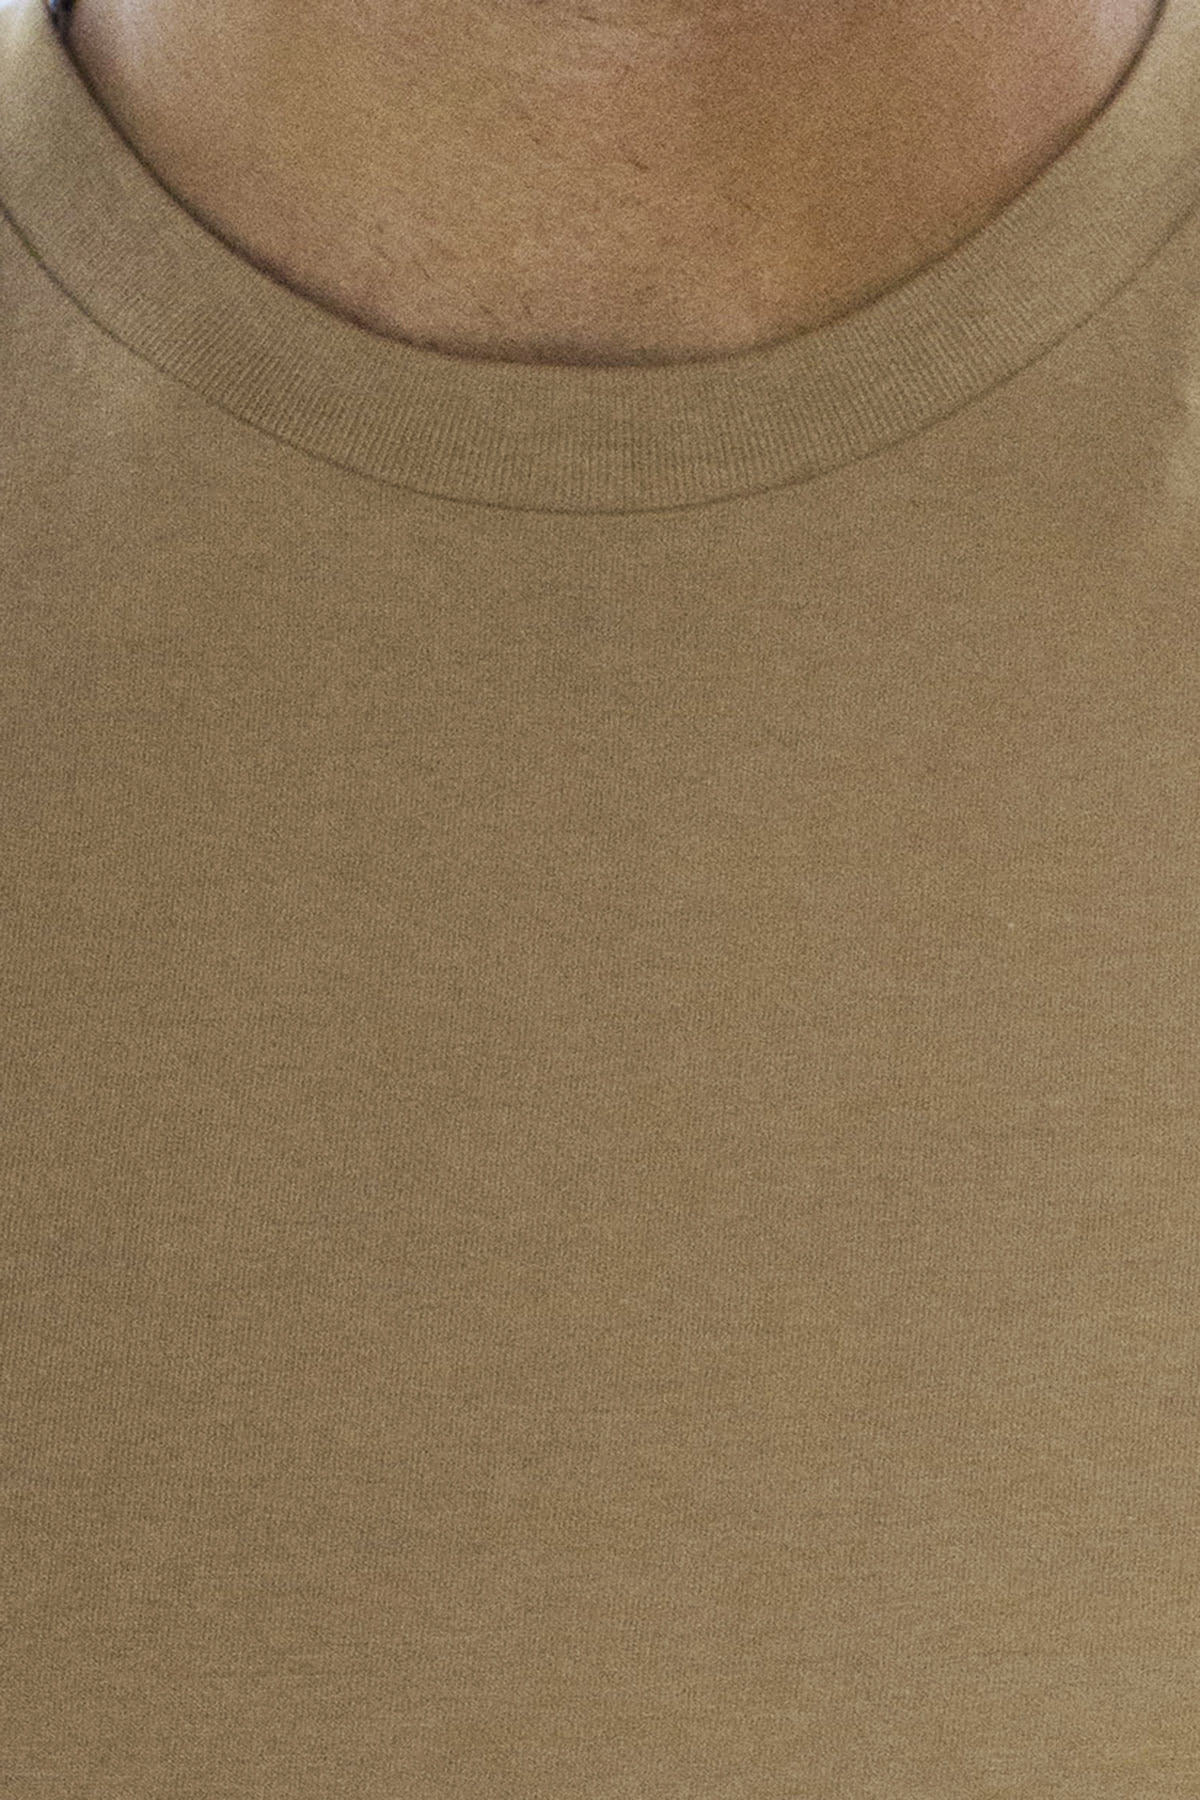 T-shirt da uomo in cotone organico tinta unita cammello regular fit elasticizzata girocollo